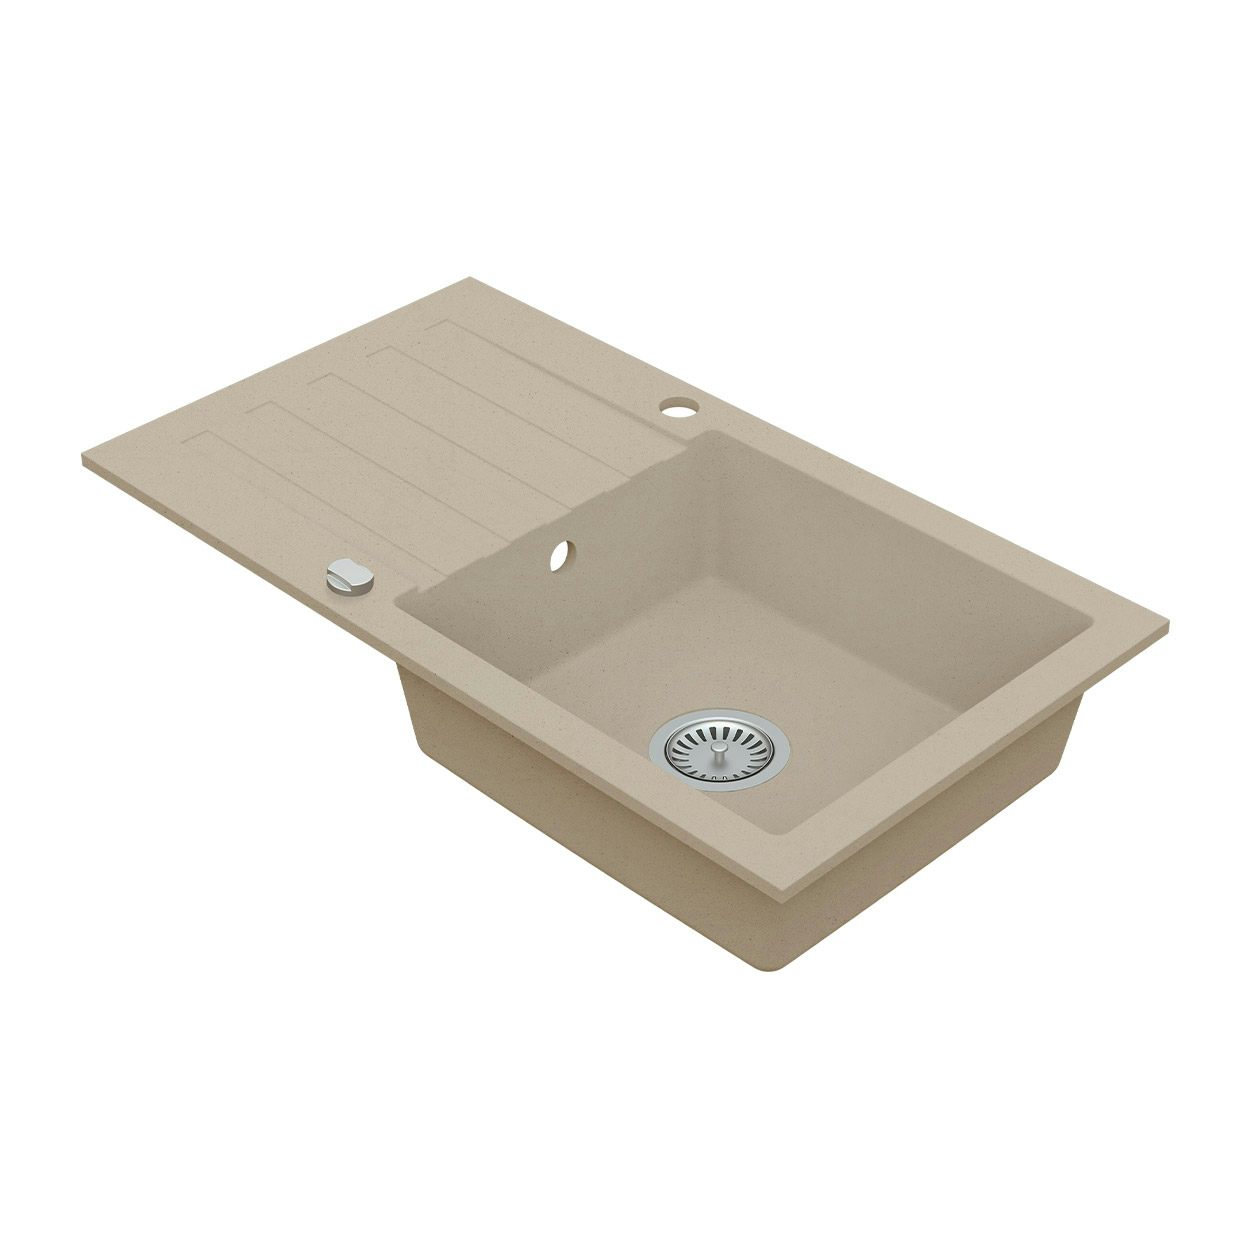 Schon Arola Sand beige 1.0 bowl reversible kitchen sink